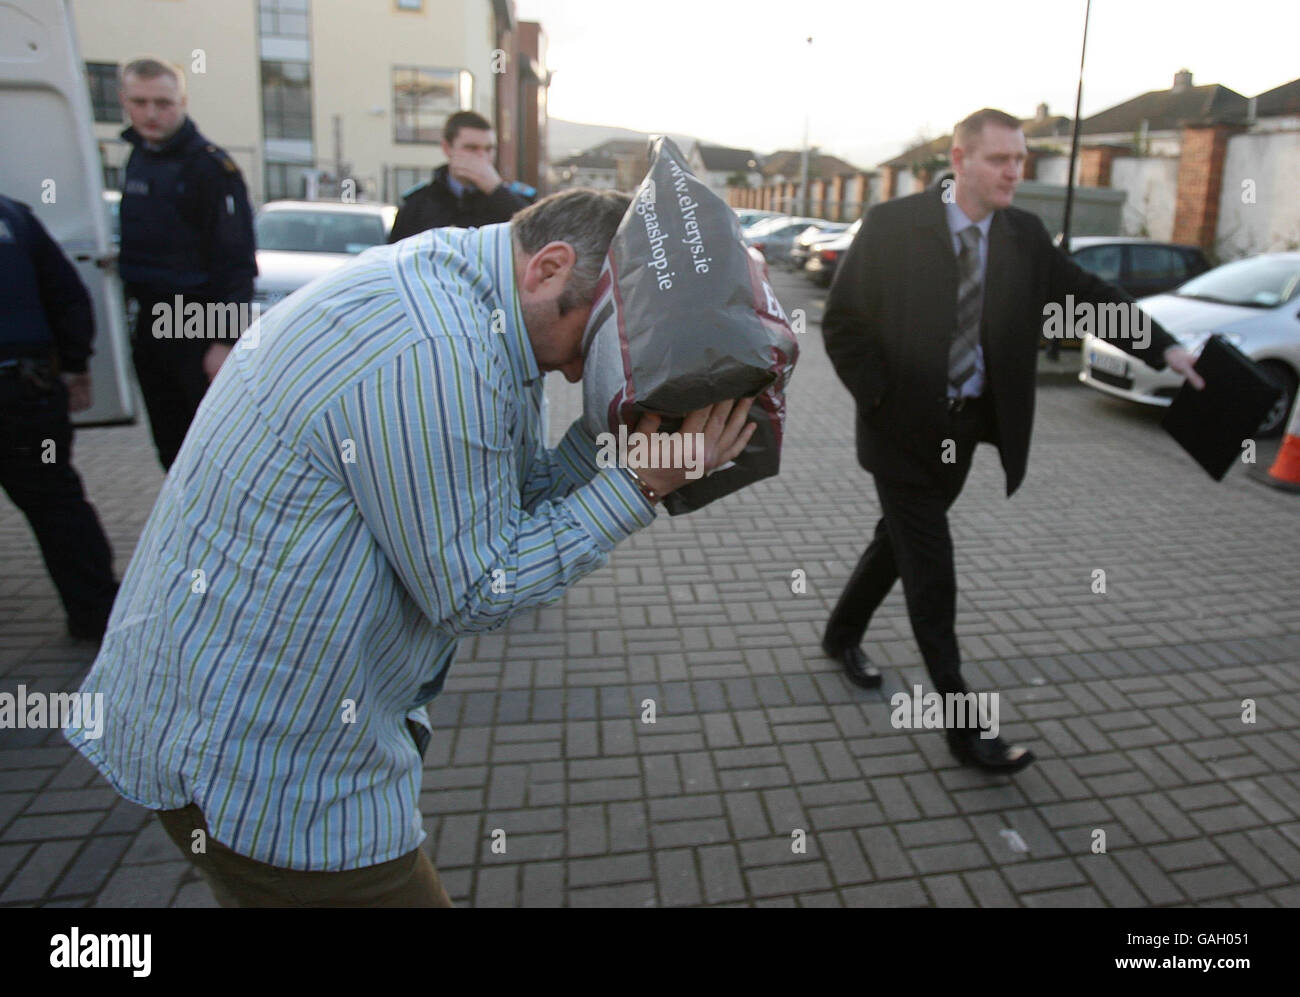 Peter Kelly couvre son visage lorsqu'il arrive au palais de justice de Tallaght à l'ouest de Dublin pour faire face à des accusations en rapport avec une saisie d'héroïne de 2 millions d'euros à Tallaght le week-end. Banque D'Images